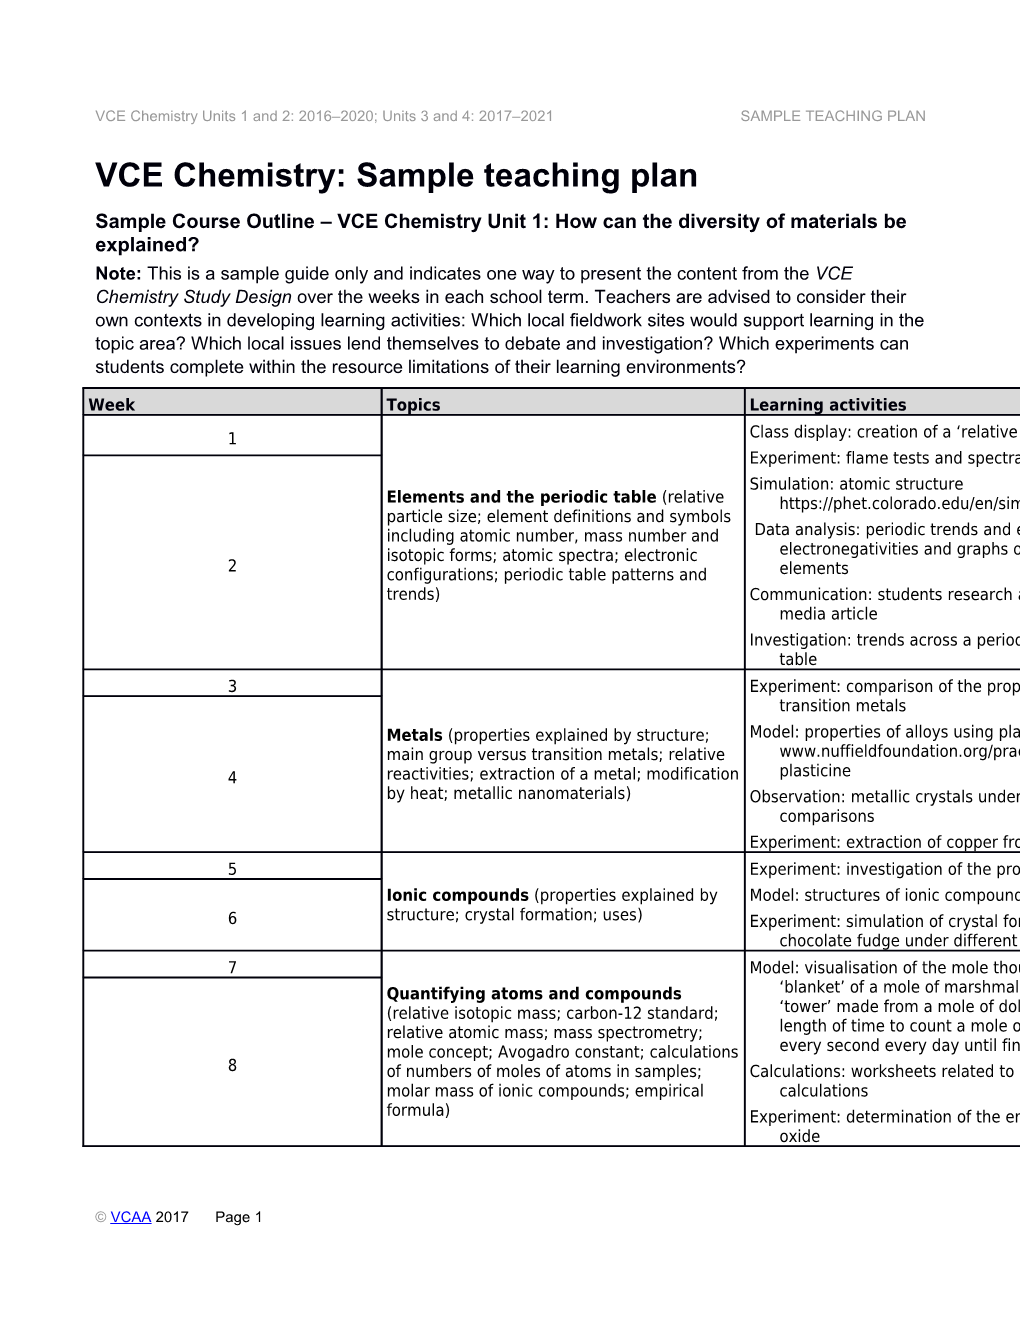 VCE Chemistry: Sample Teaching Plan